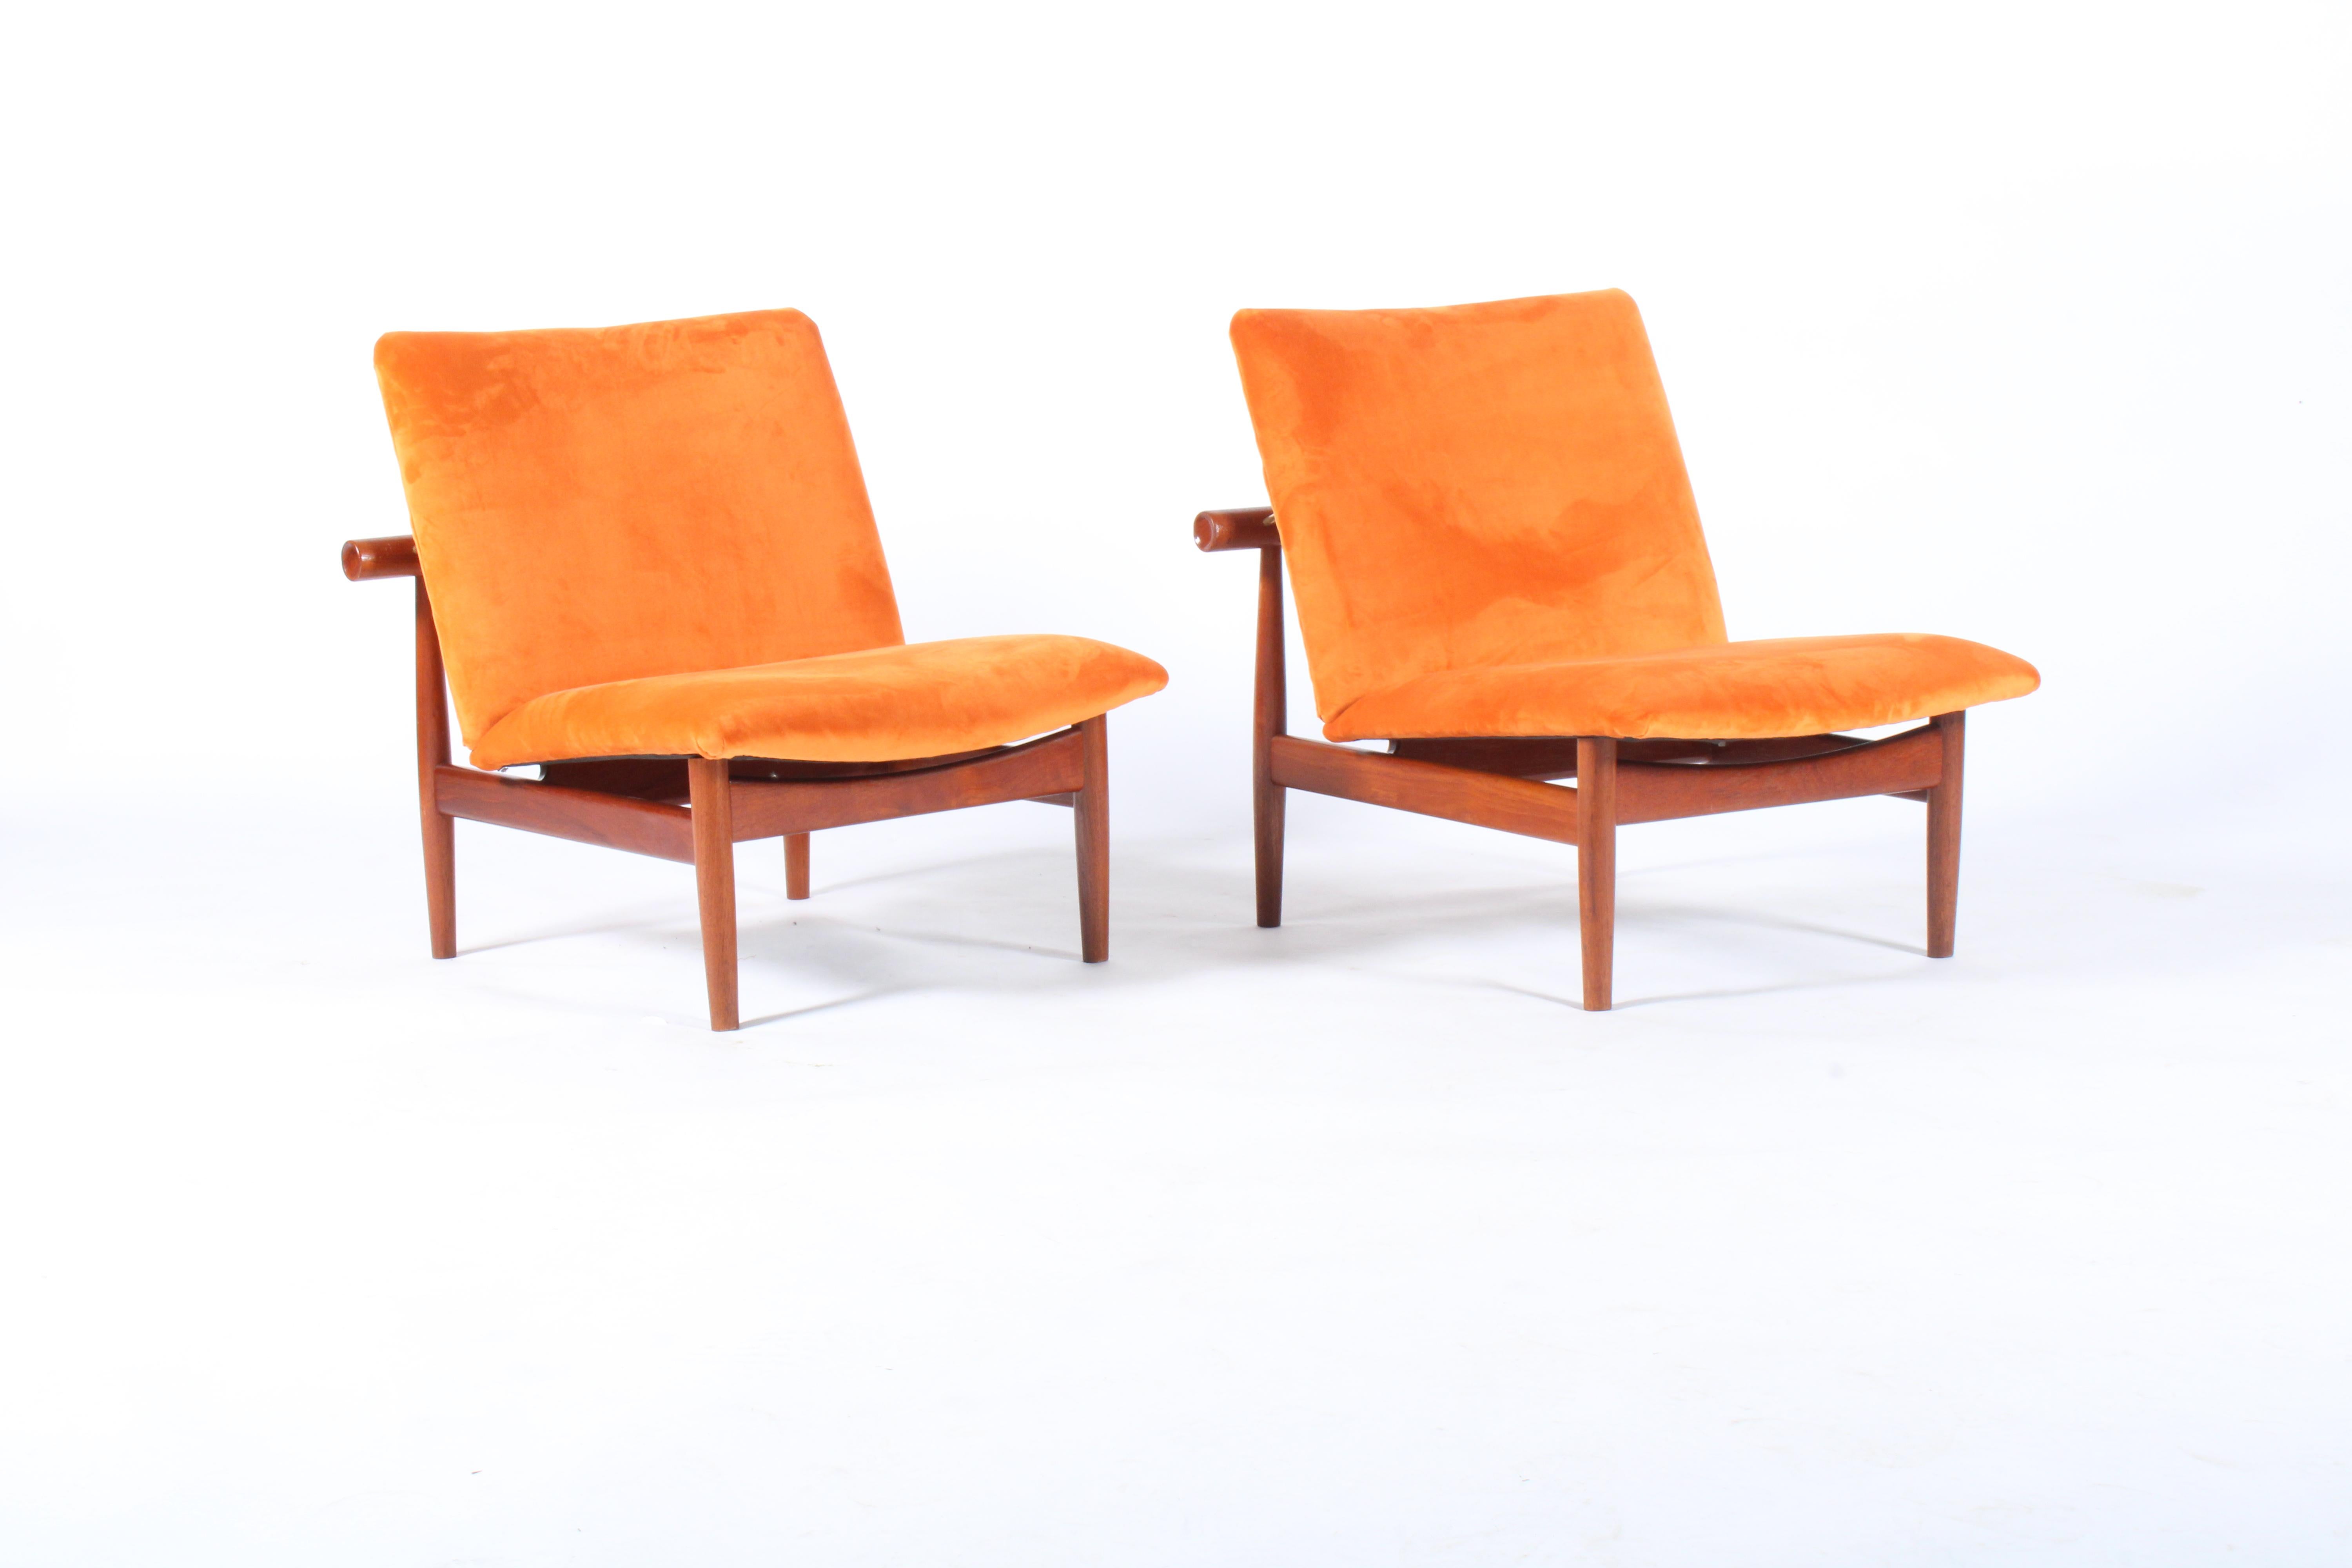 Pair of Iconic Danish Design Japan Chairs by Finn Juhl for France & Daverkosen 11